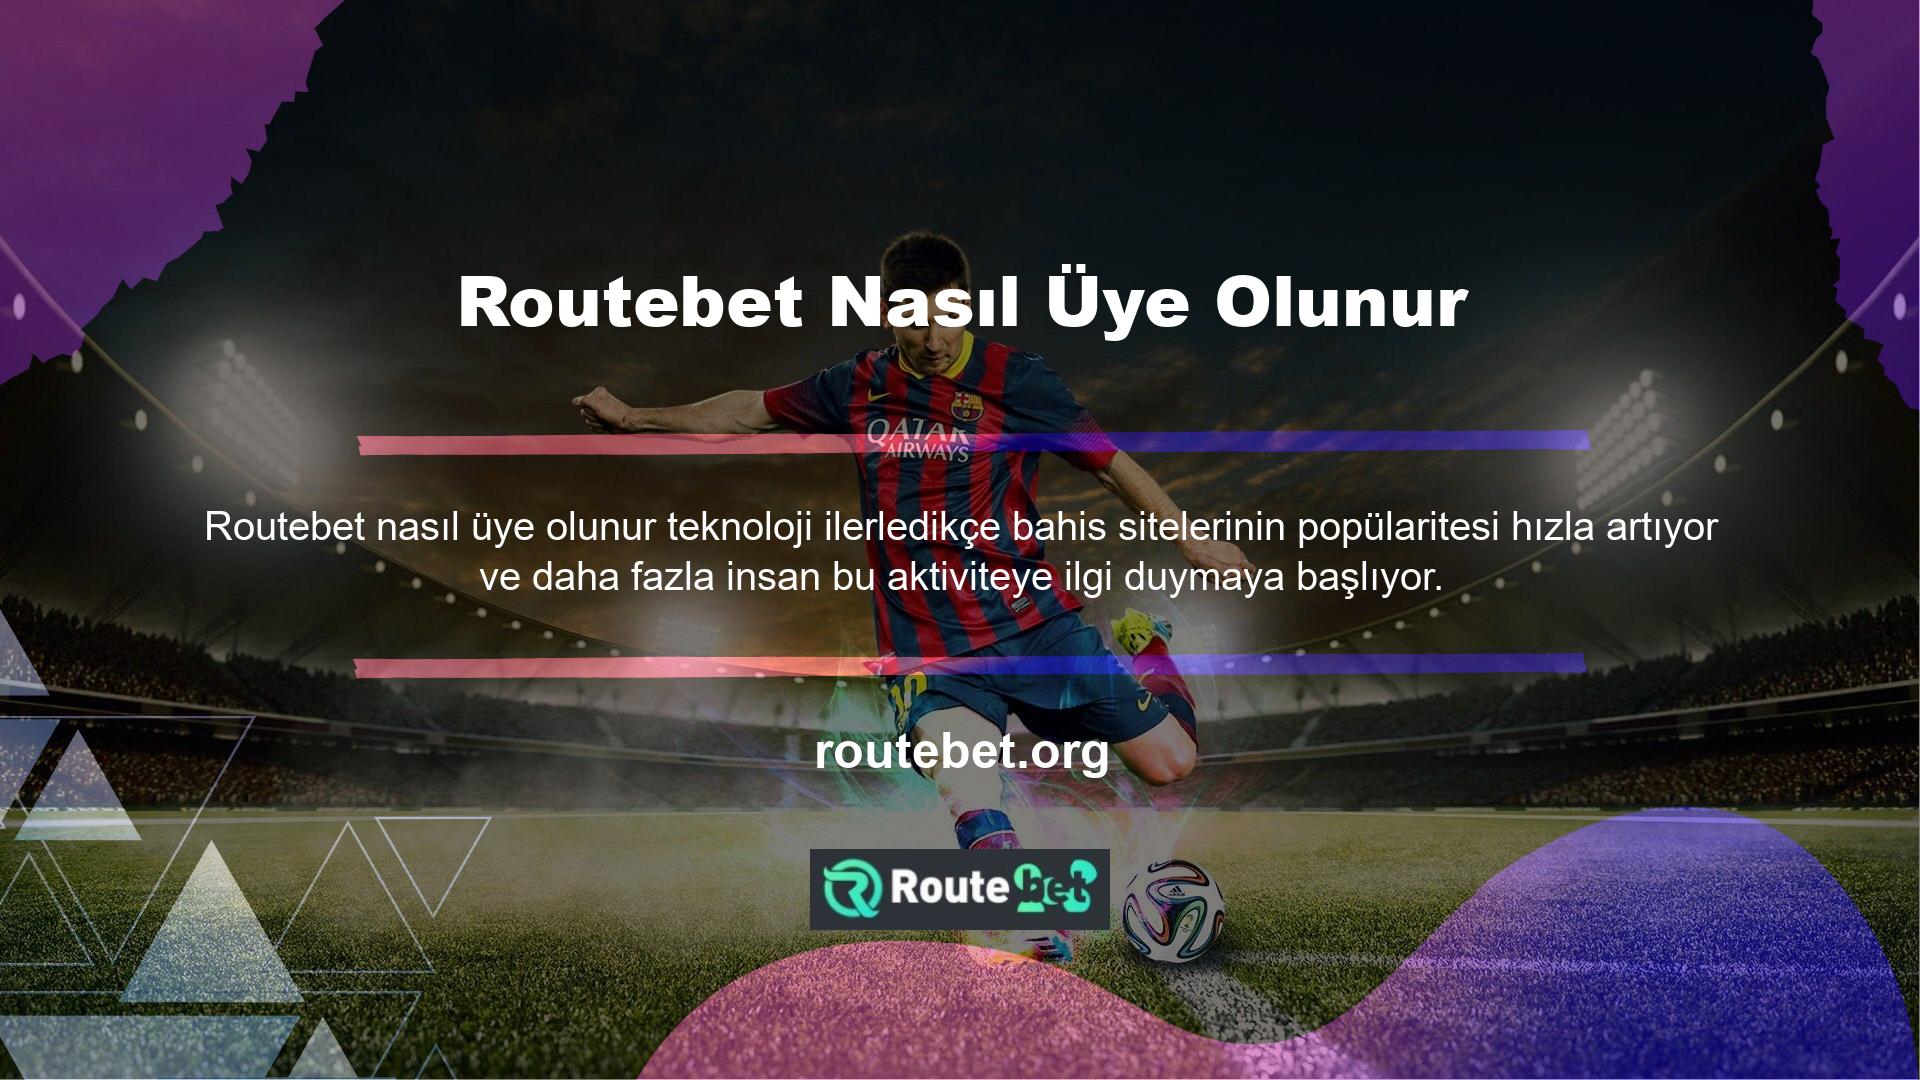 Routebet, bahis endüstrisindeki Routebet casino altyapı bahis hizmetlerinin en güvenilir sağlayıcısıdır